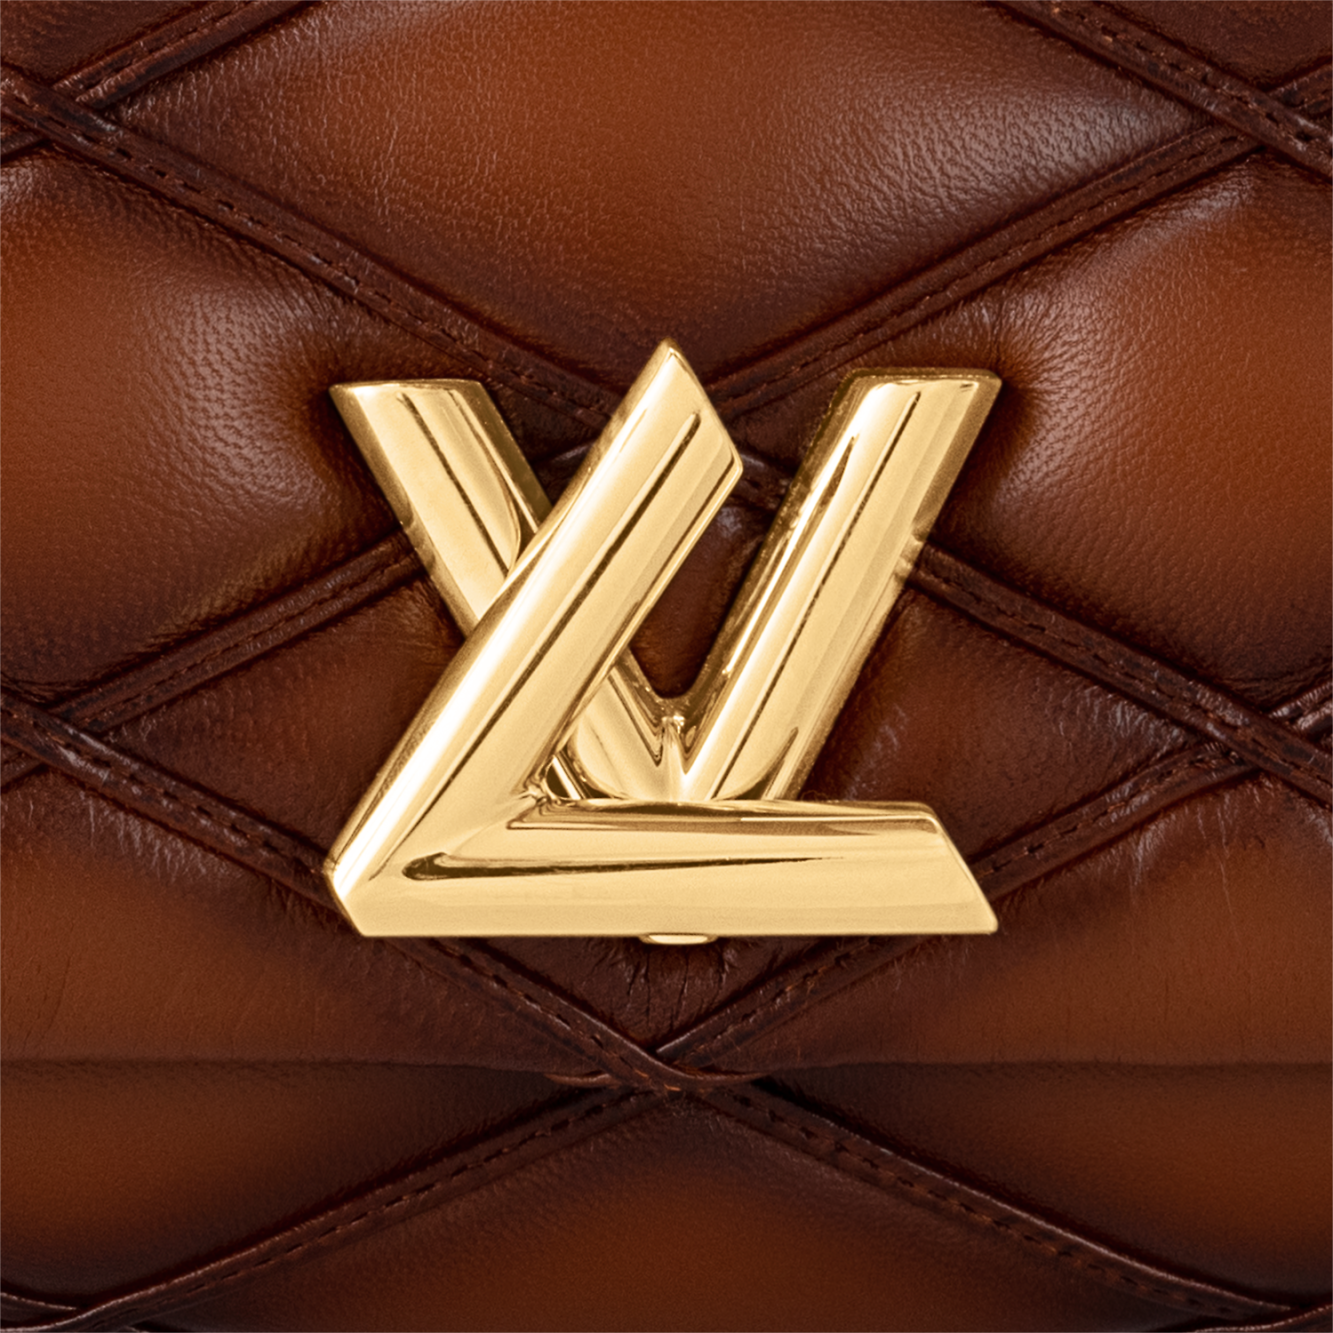 Kultowa torebka Louis Vuitton GO-14 powraca w nowej odsłonie